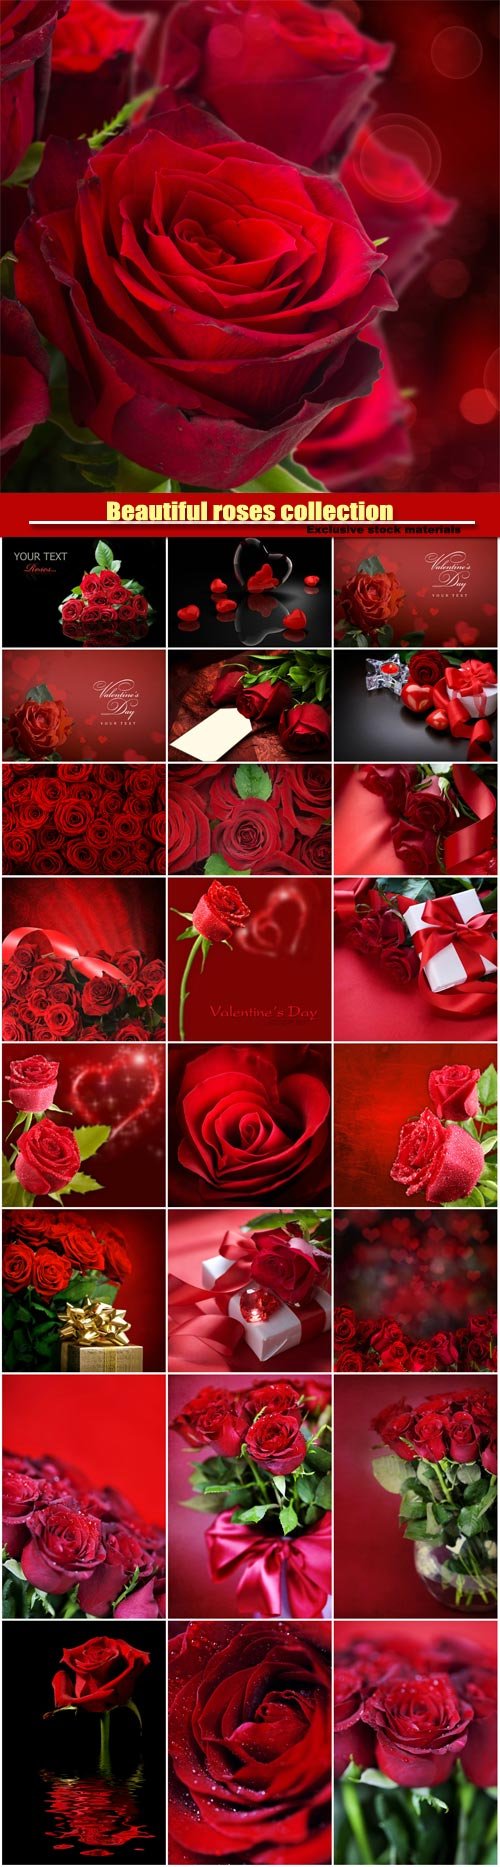 Hình ảnh chất lượng cao (stock) bộ sưu tập hình nền hoa hồng lãng ...